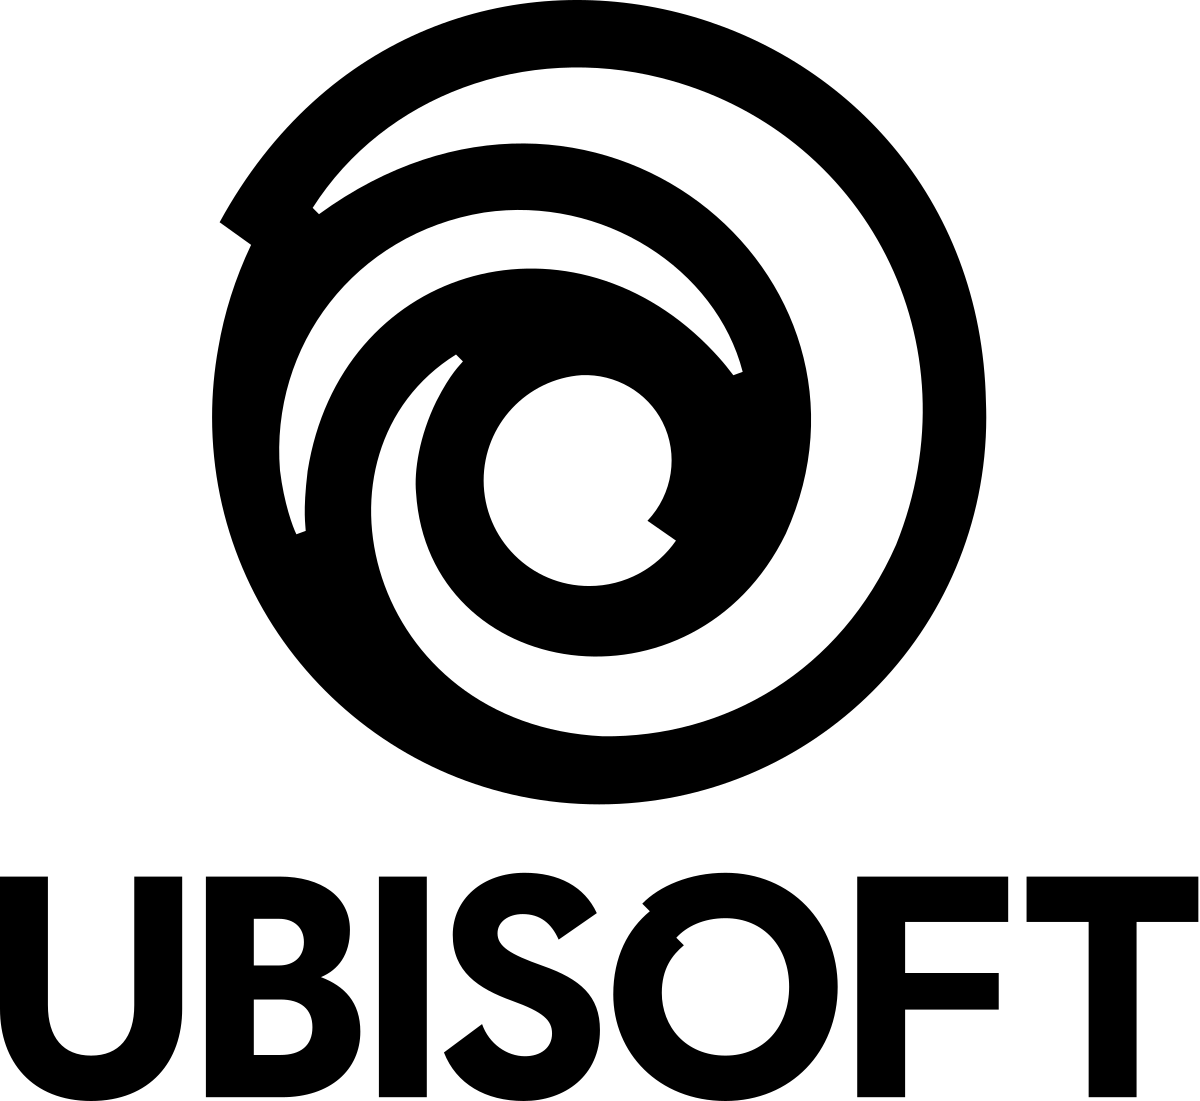 Unisoft Logo